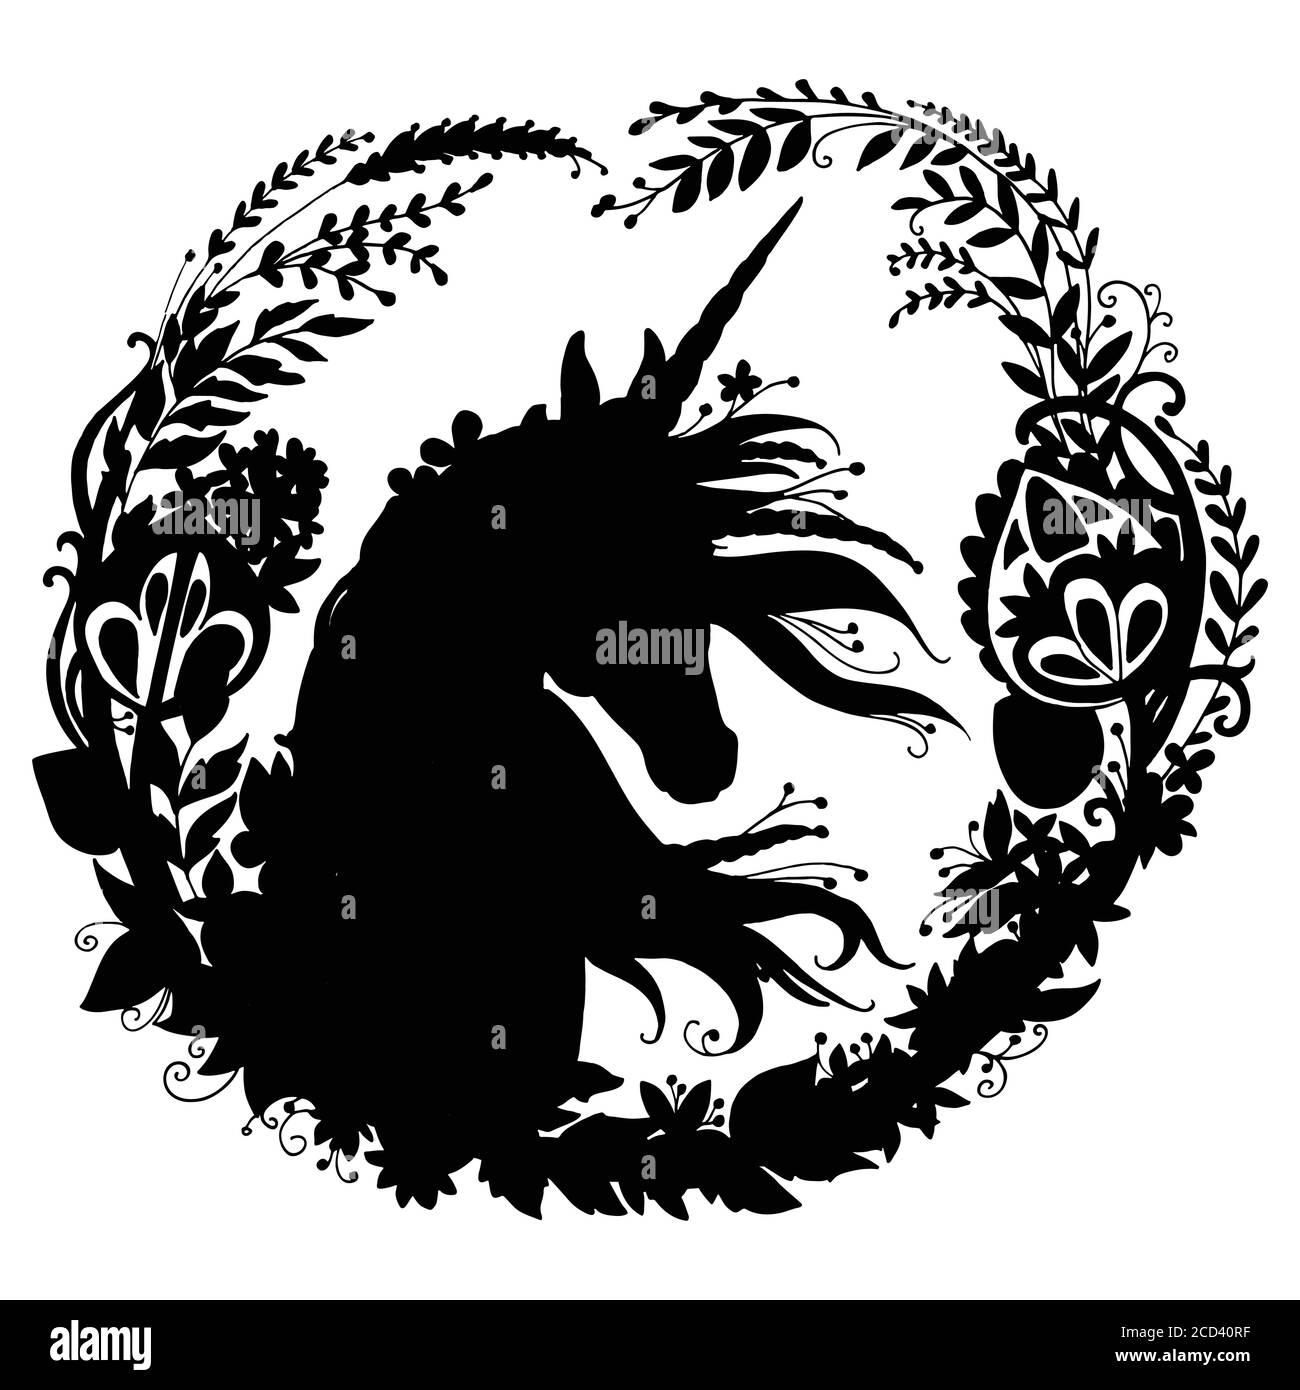 Unicorno vettore con mane lungo in composizione circolare. Immagine del modello di silhouette nera isolata su sfondo bianco. Per stampa, adesivi, design, Illustrazione Vettoriale